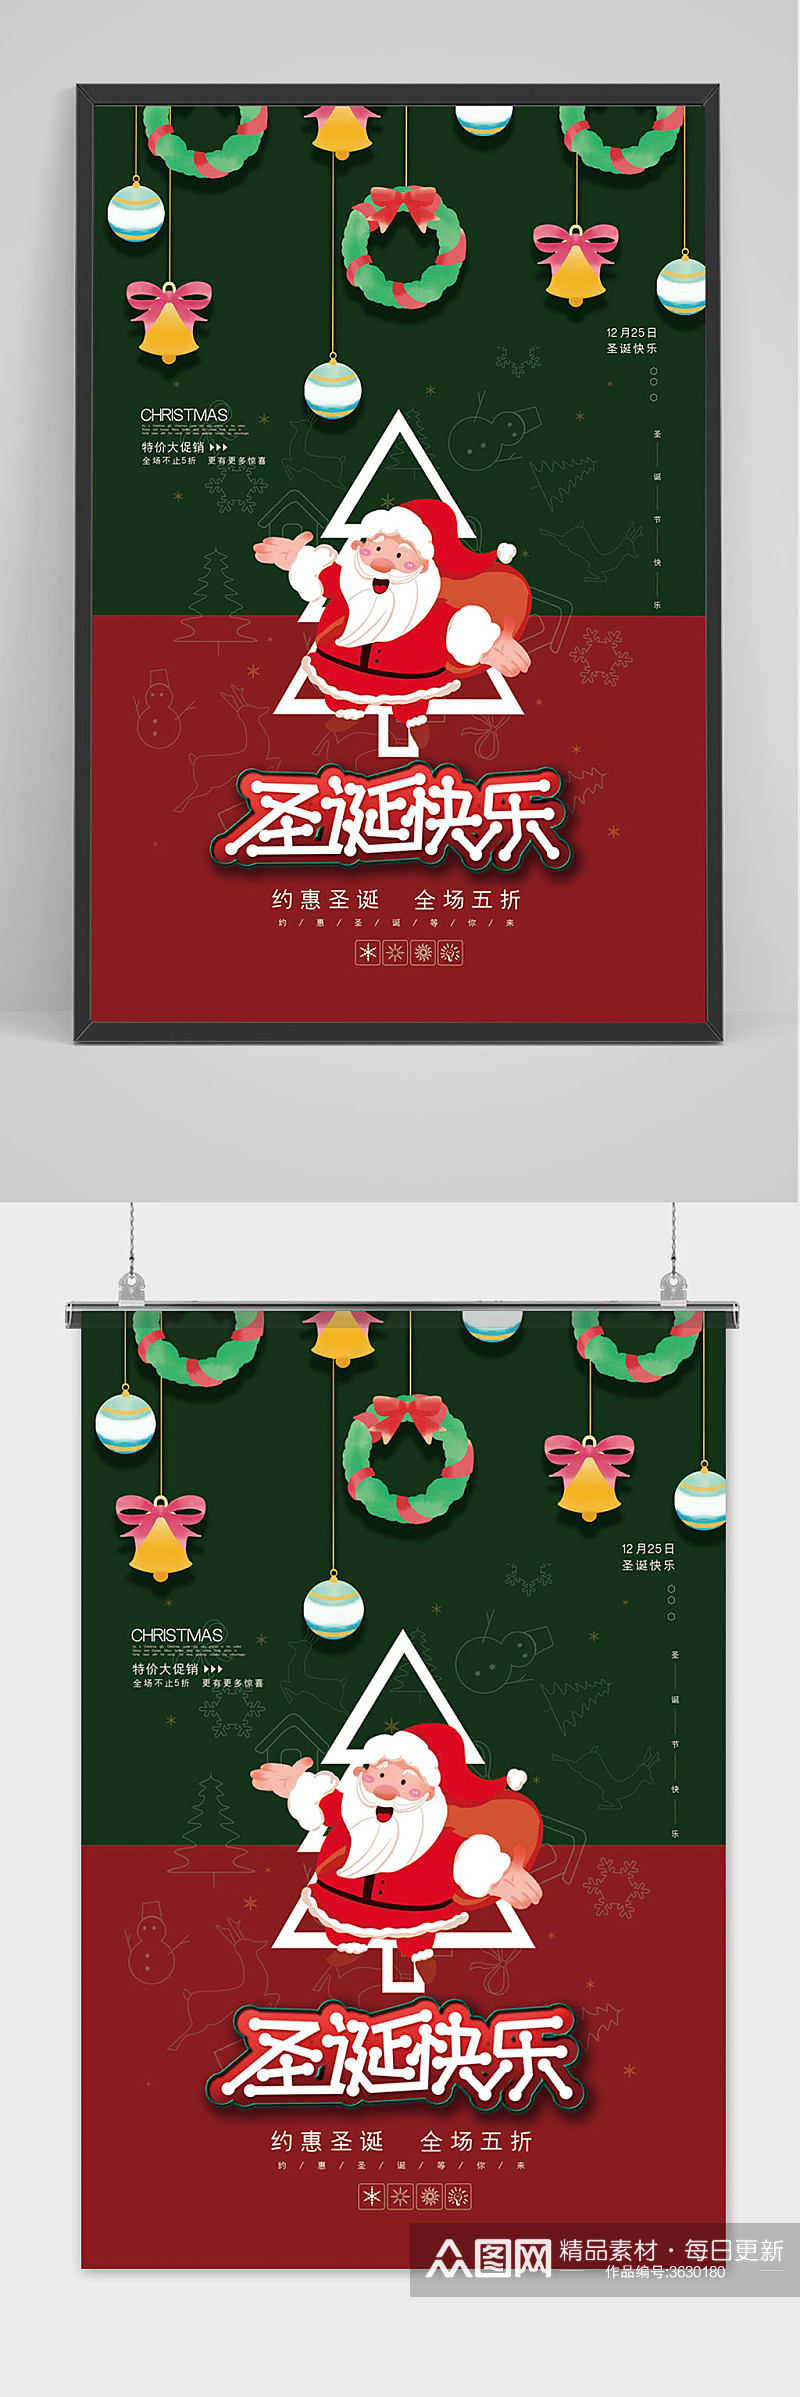 创意红绿色圣诞节圣诞老人海报素材